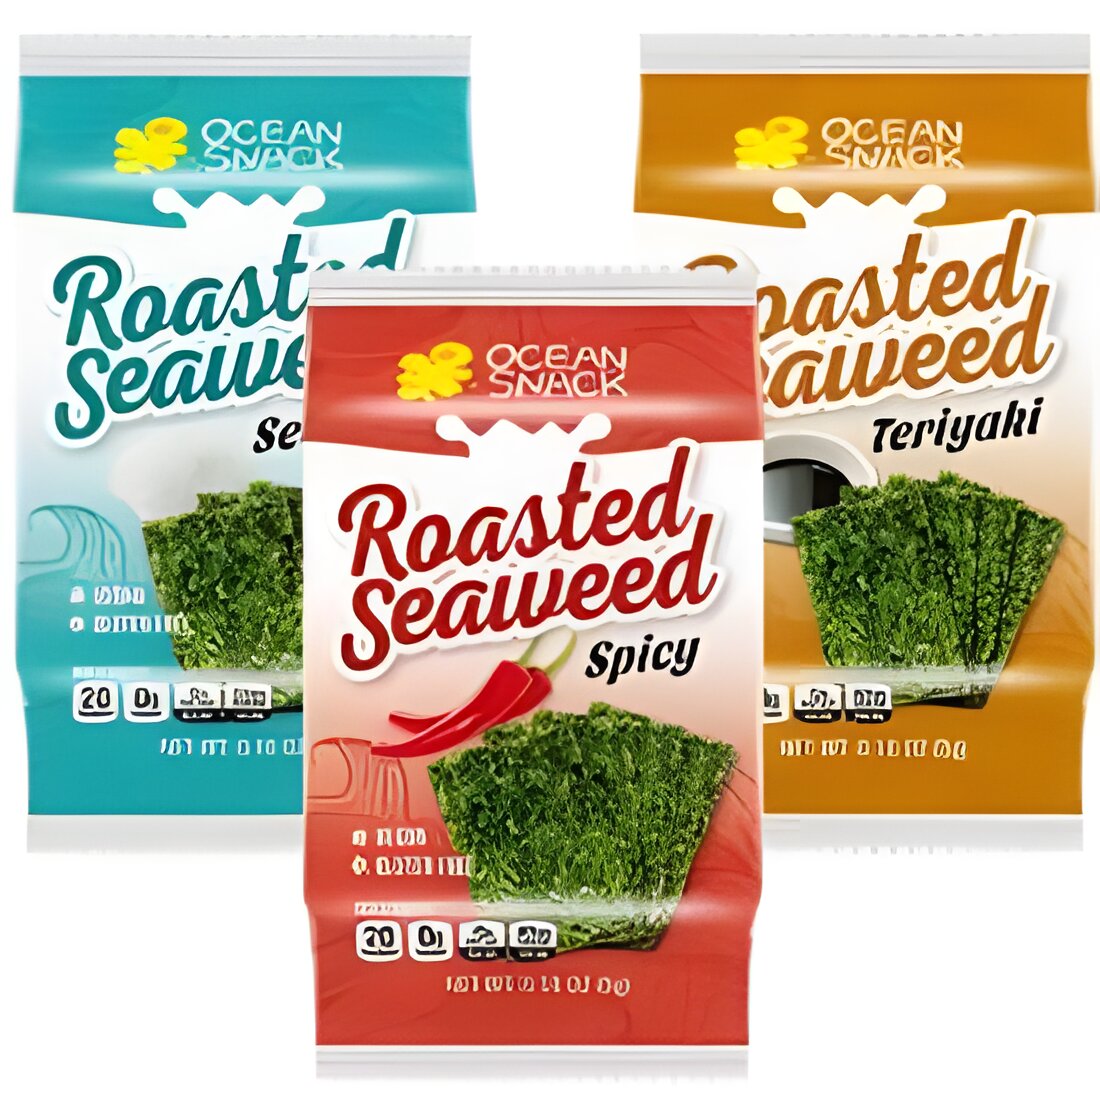 Free Ocean Snack Roasted Seaweed